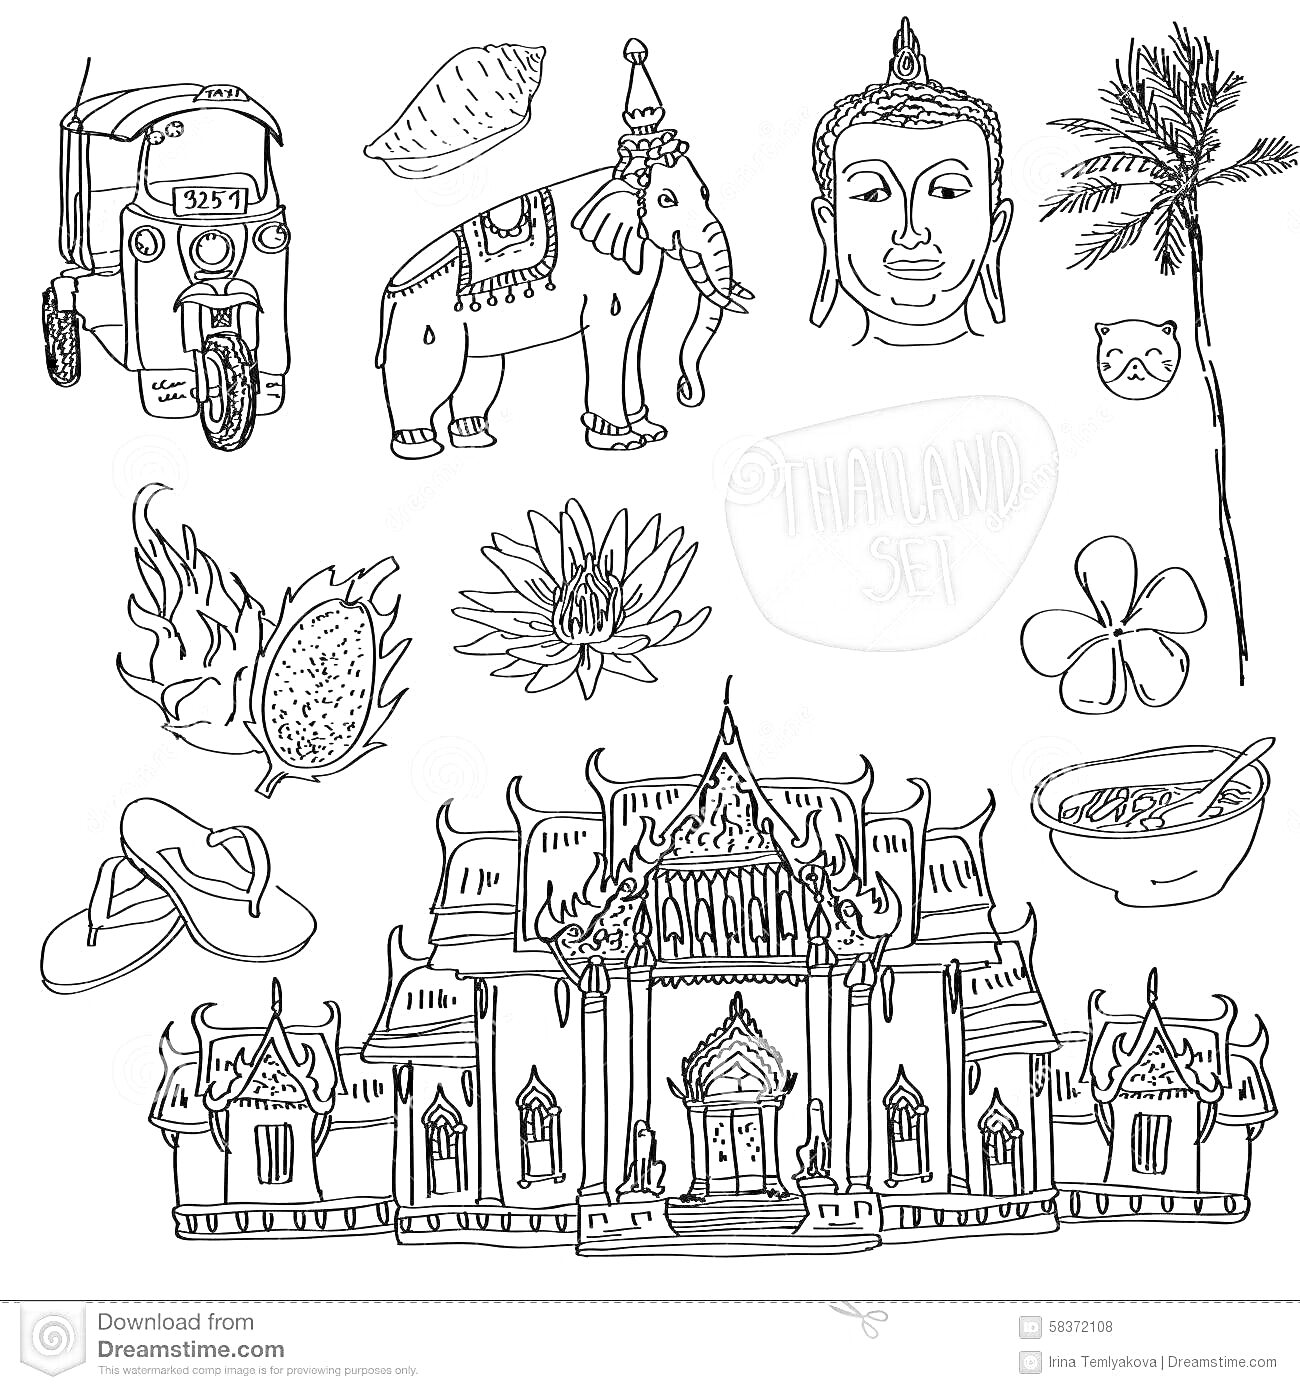 Храм, тук-тук, ананас, слон с украшениями, голова Будды, пальма, фрукт дракона, цветок лотоса, кокос, орхидея, рисовая миска, шлепанцы